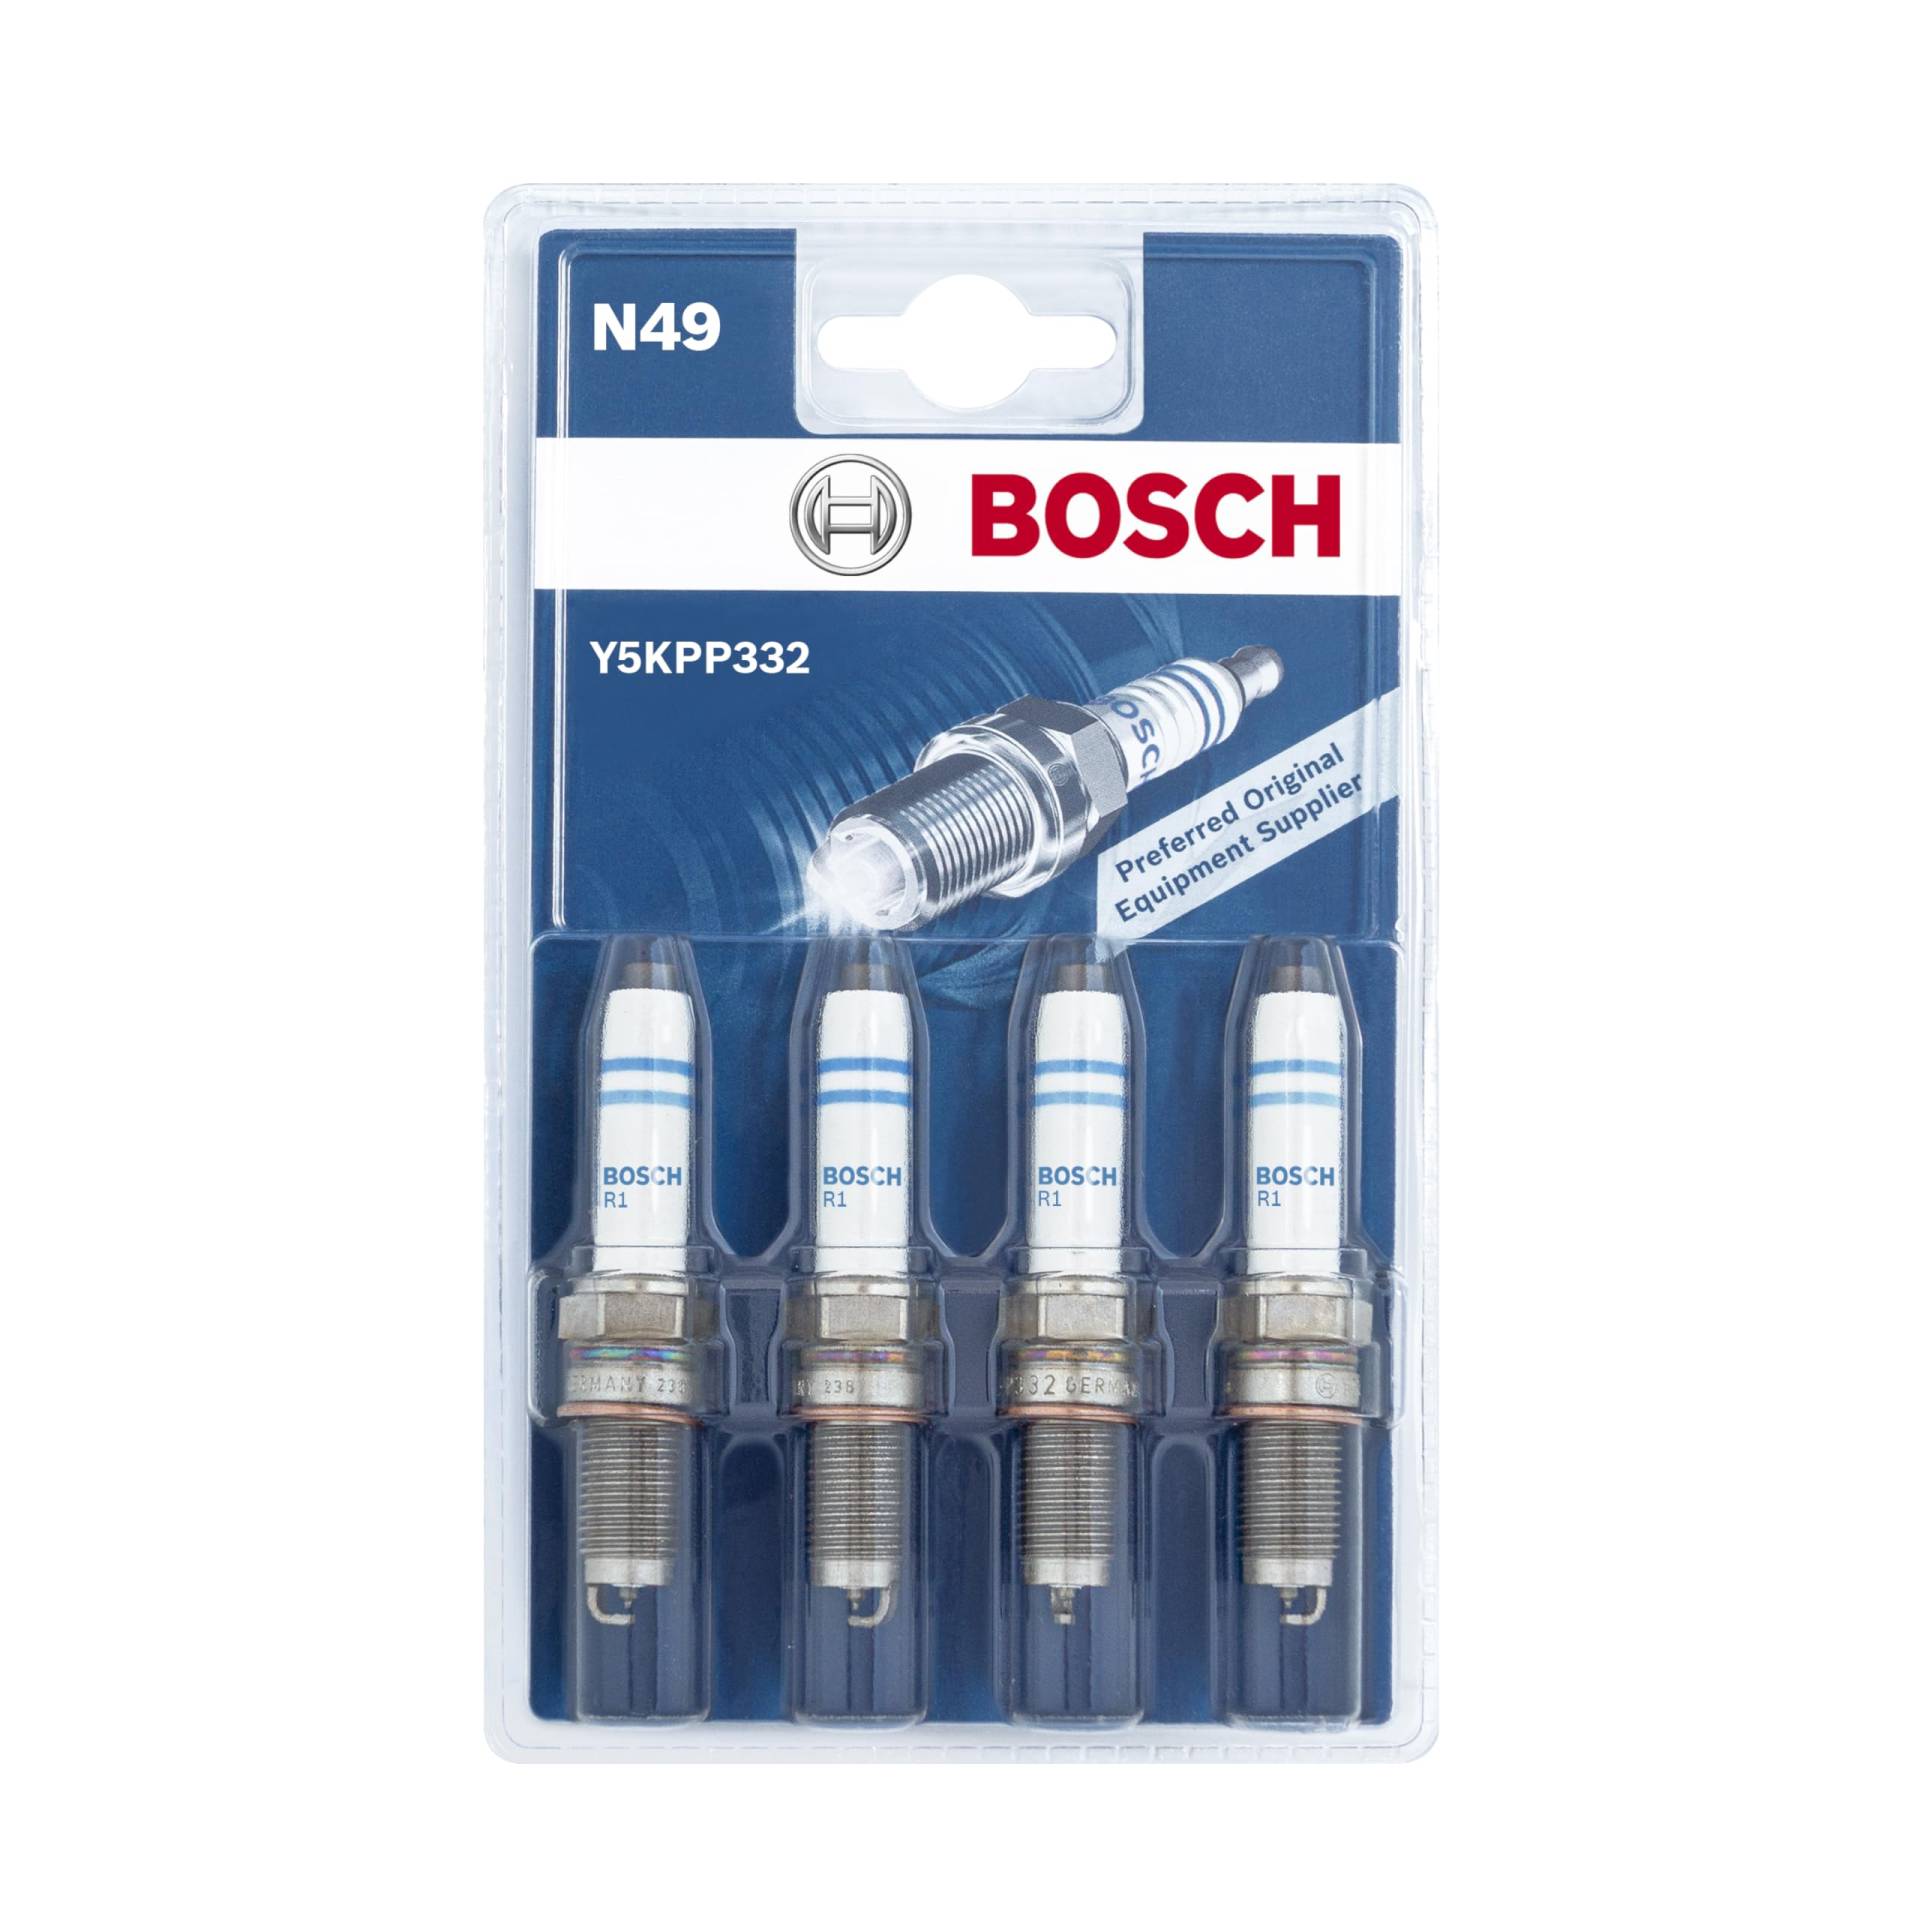 Bosch Y5KPP332 (N49) - Zündkerzen Double Platinum - 4er Set von Bosch Automotive